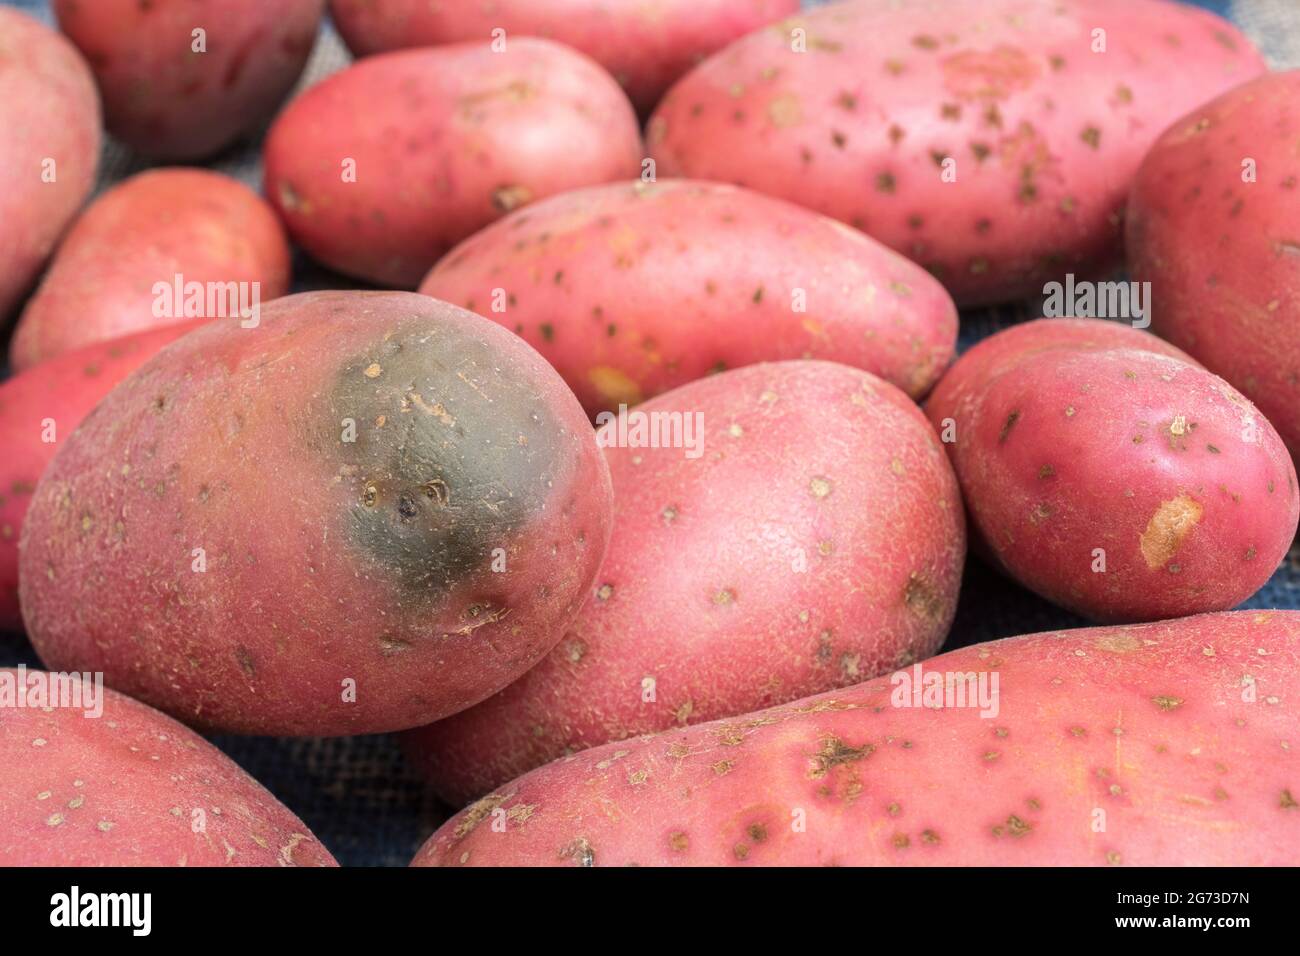 Rote/rotbraune Kartoffeln, die in Großbritannien angebaut werden. Die Kartoffeln haben eine gewisse Krankheit, aber hier ist das Problem die „Begrünung“ einer Kartoffel [siehe Anmerkungen]. Stockfoto